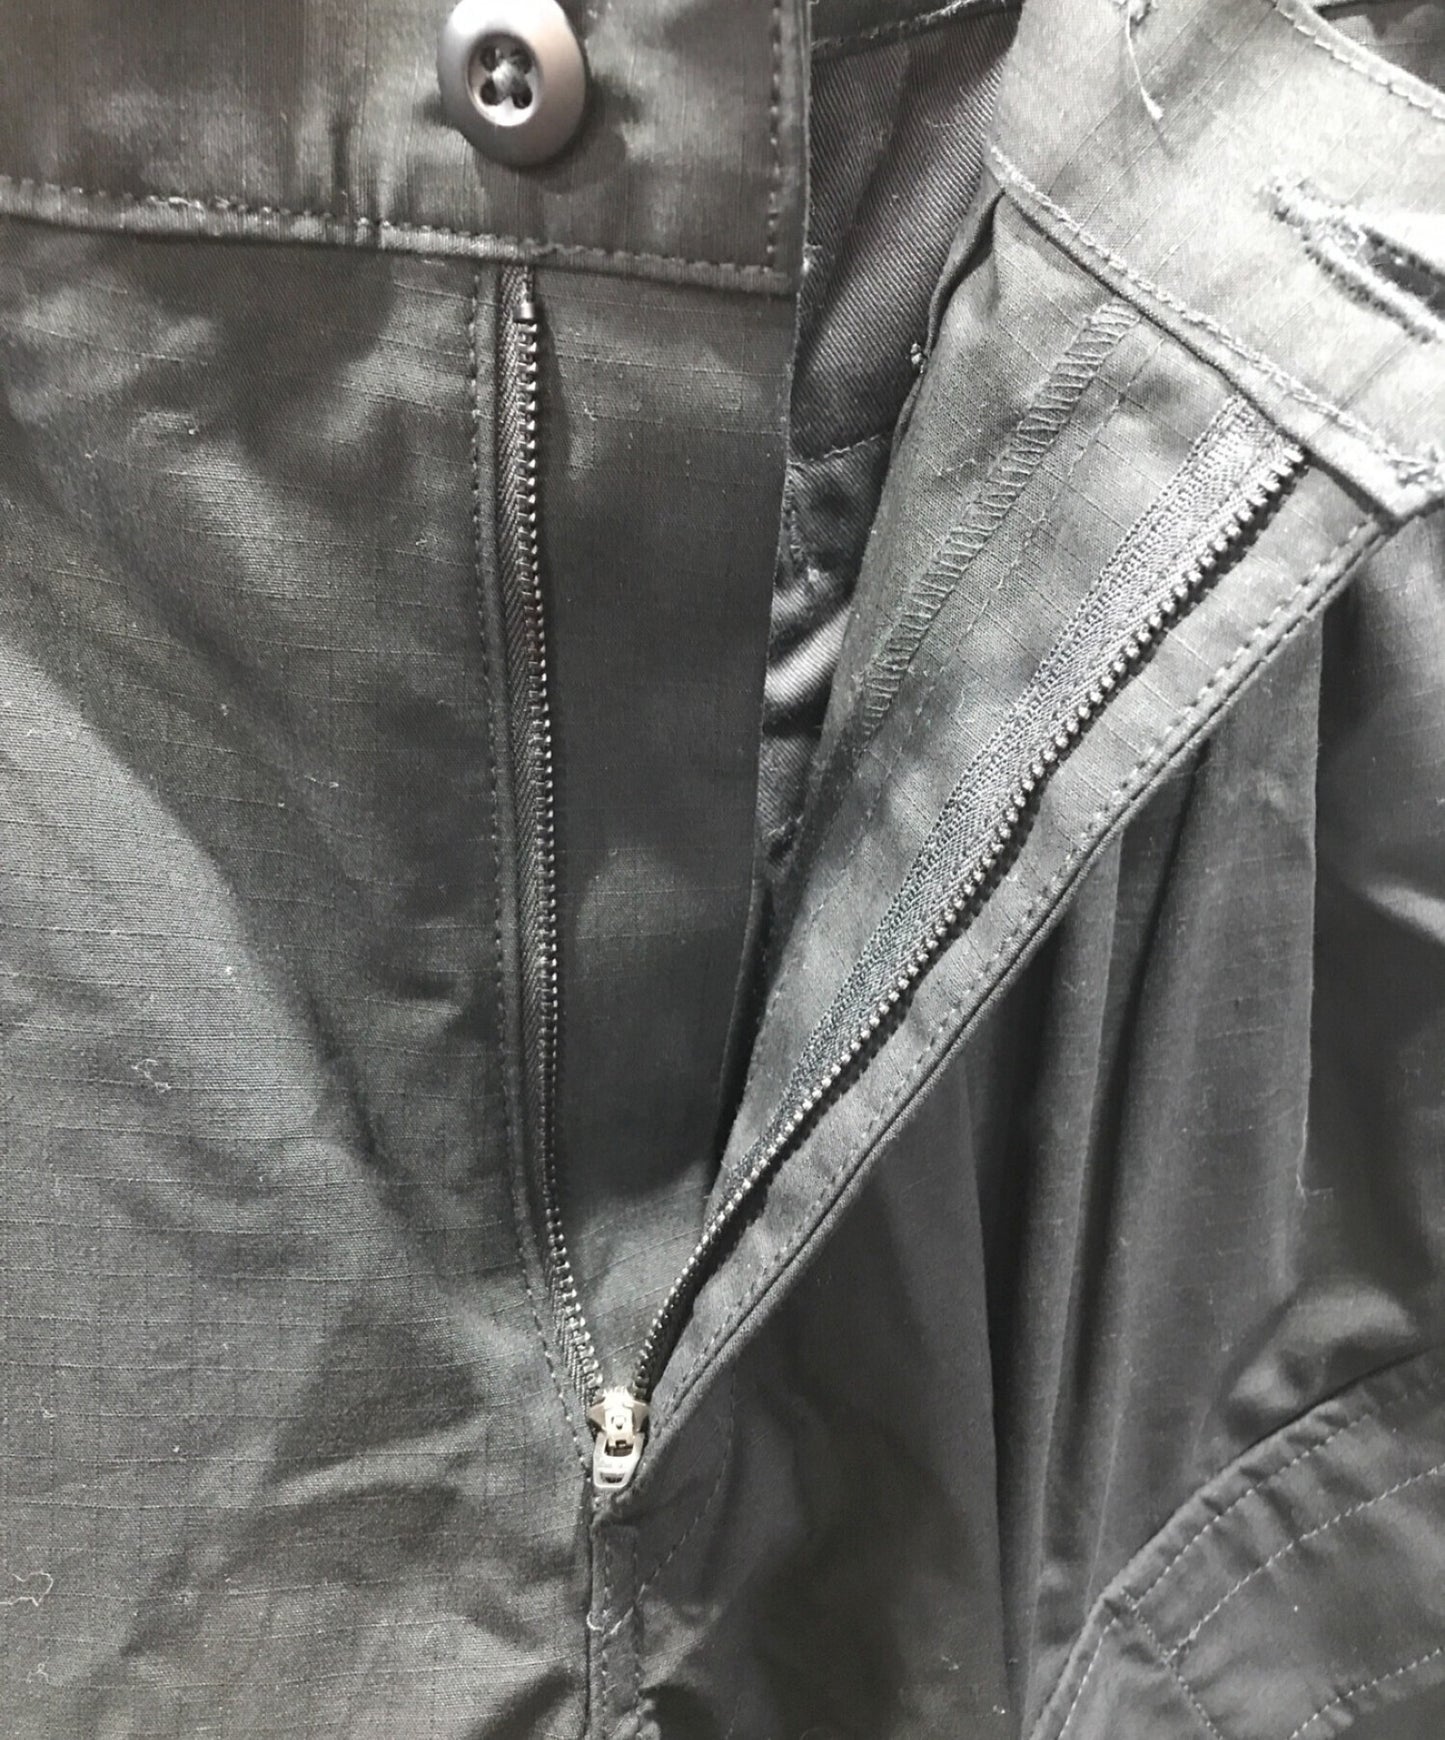 อื้อฉาวสีดำ Yohji Yamamoto RIPSTOP 12tack กางเกง HG-P90-058